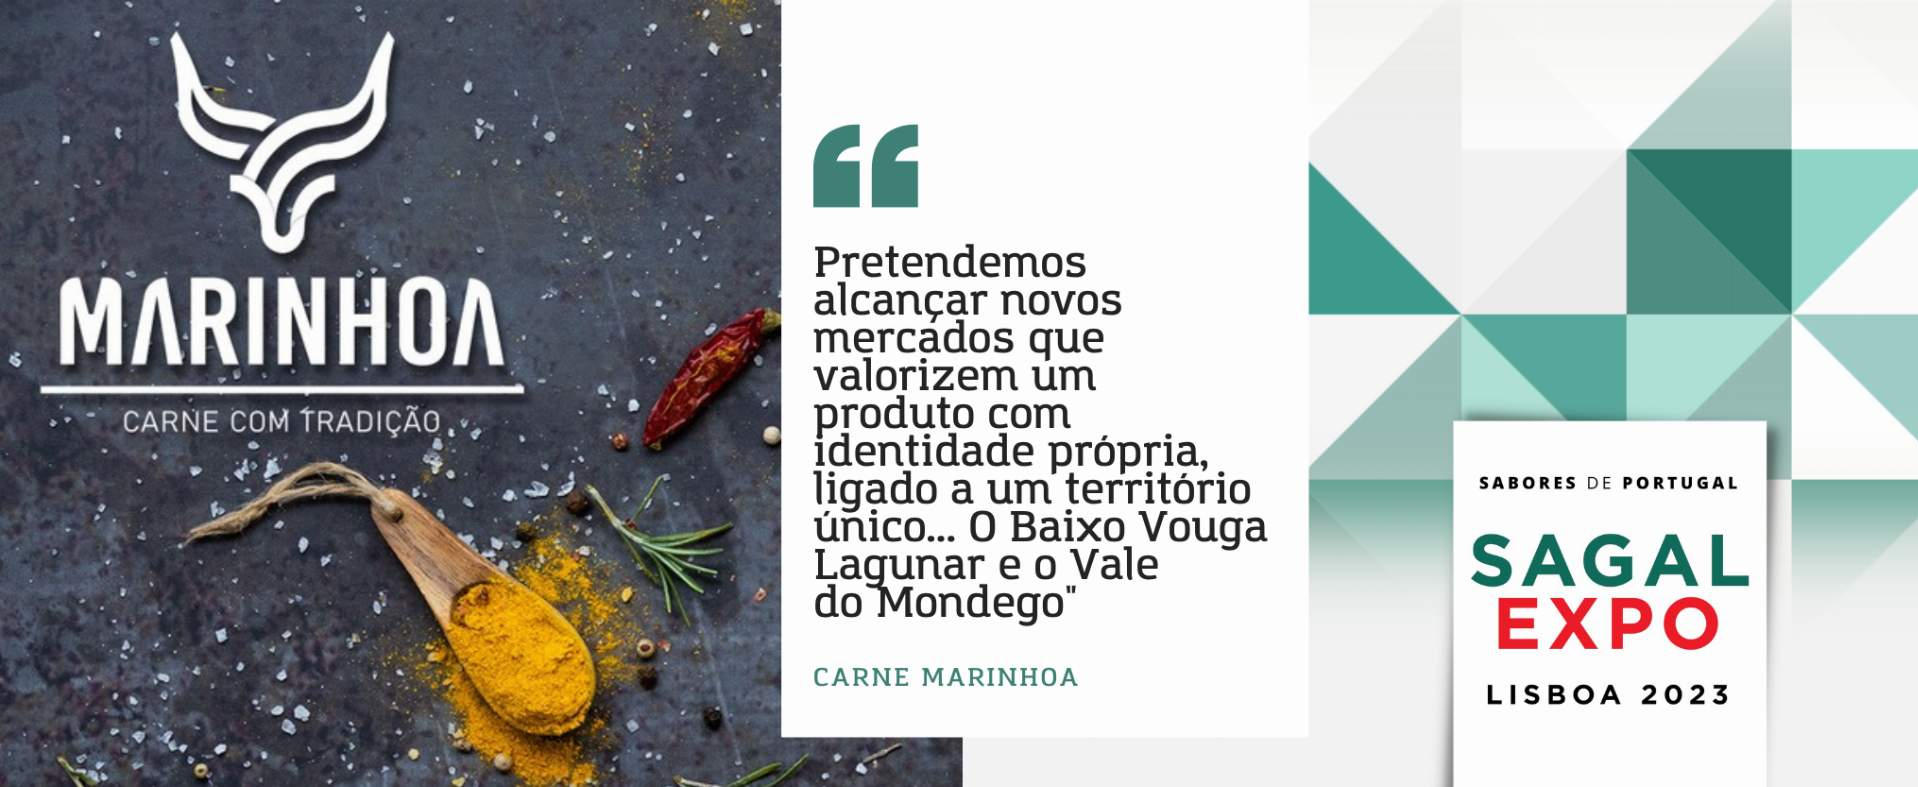 Carne Marinhoa: “Pretendemos alcançar novos mercados que valorizem um produto com identidade própria, ligado a um território único... O Baixo Vouga Lagunar e o Vale do Mondego”